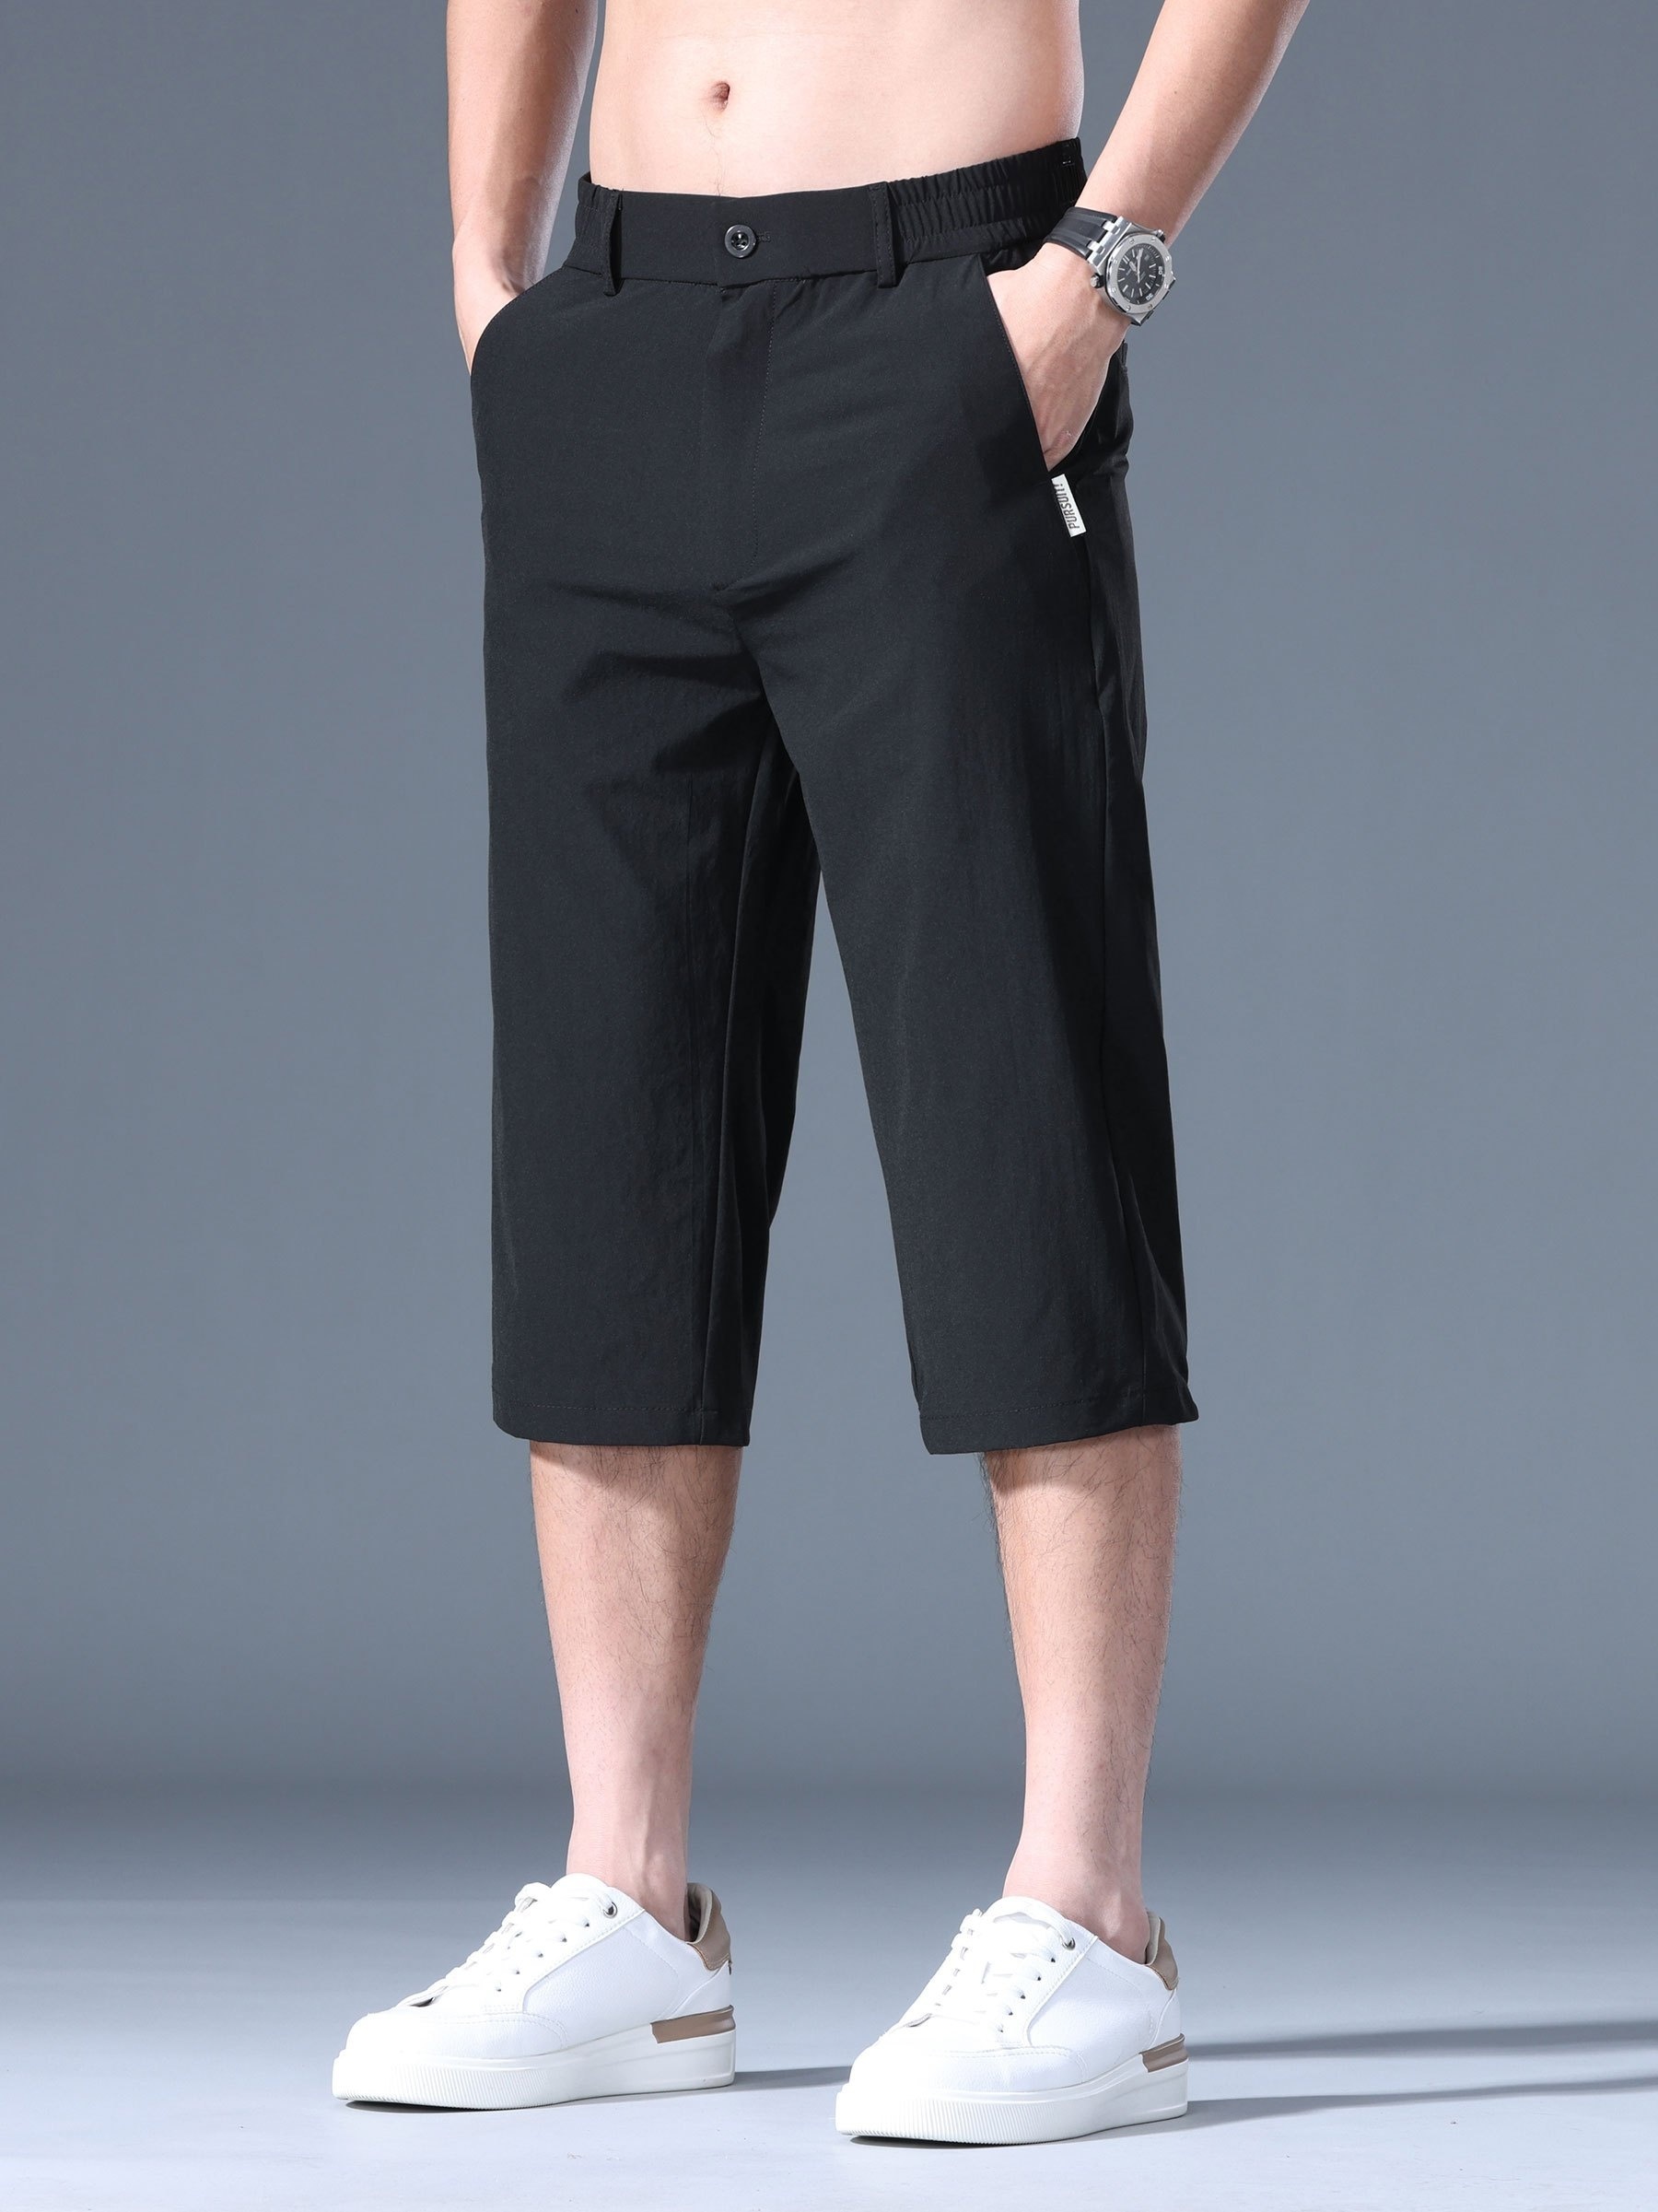 Pantalones cortos para mujer por debajo de la rodilla, pantalones de lino  de algodón con cordón elástico en la cintura pantalones capri con bolsillos